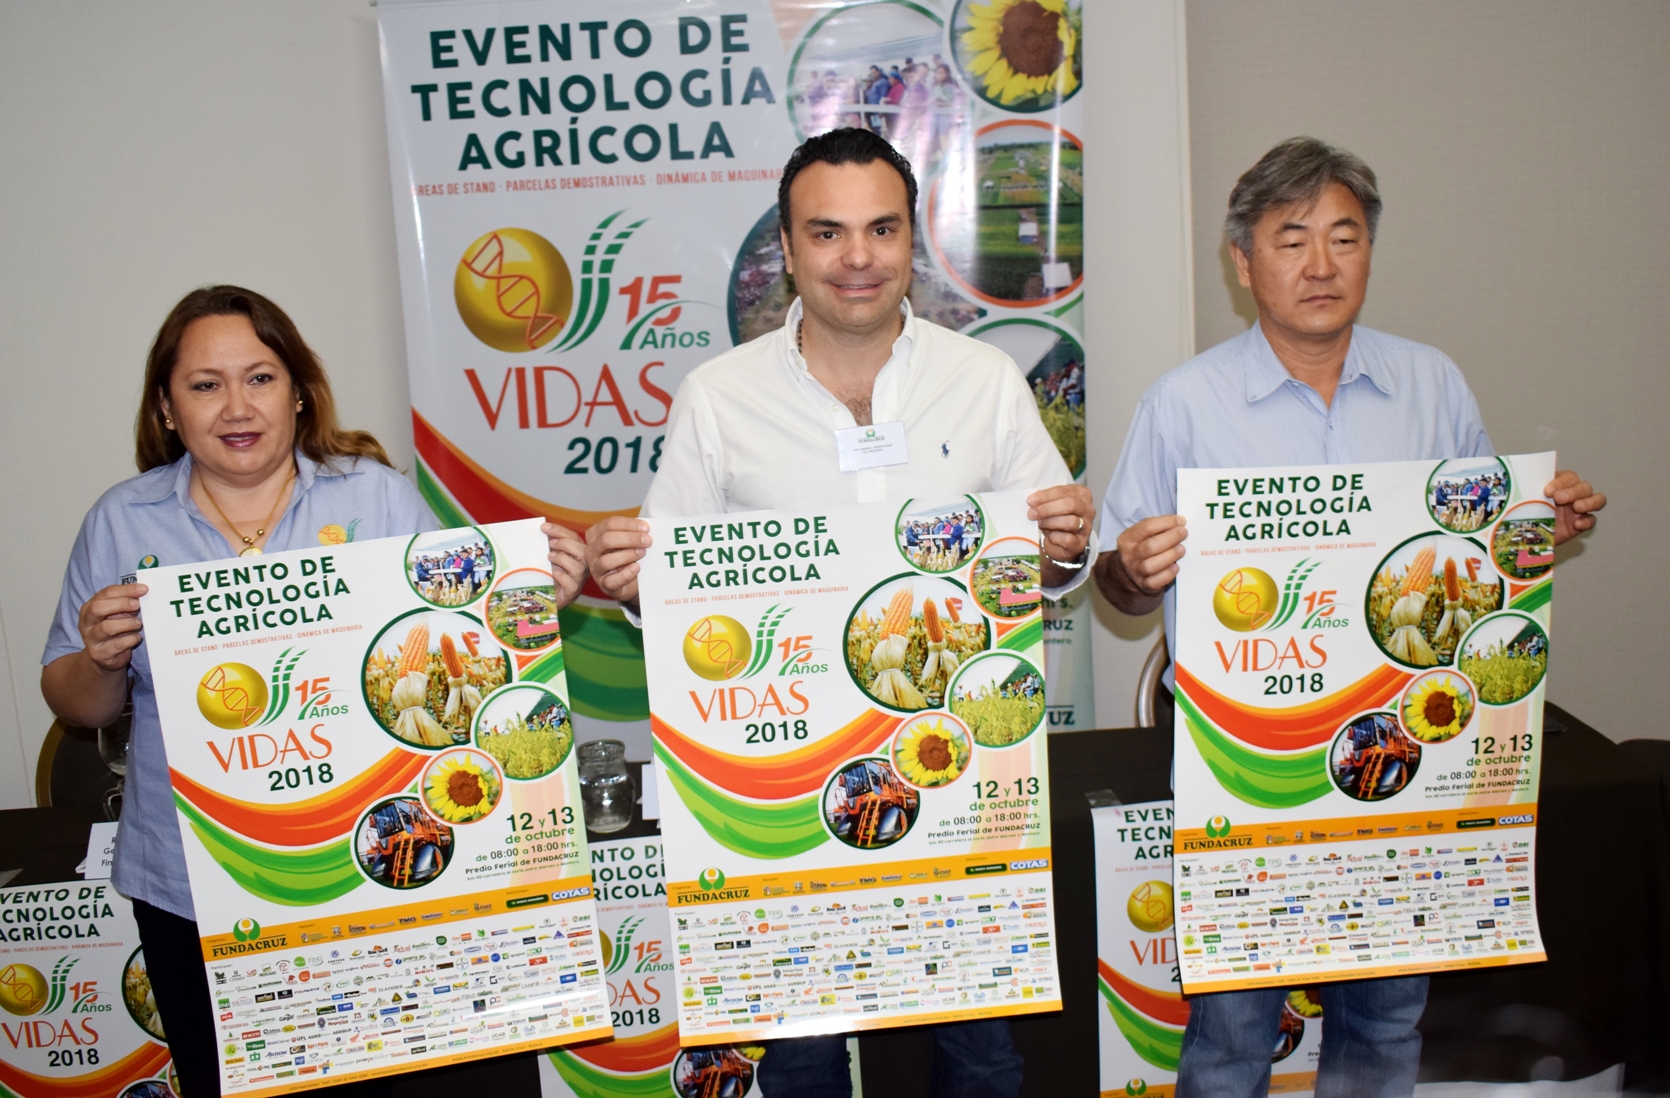 Tecnología y conocimiento para la competitividad del agricultor  Evento VIDAS lanza su versión “15 años”